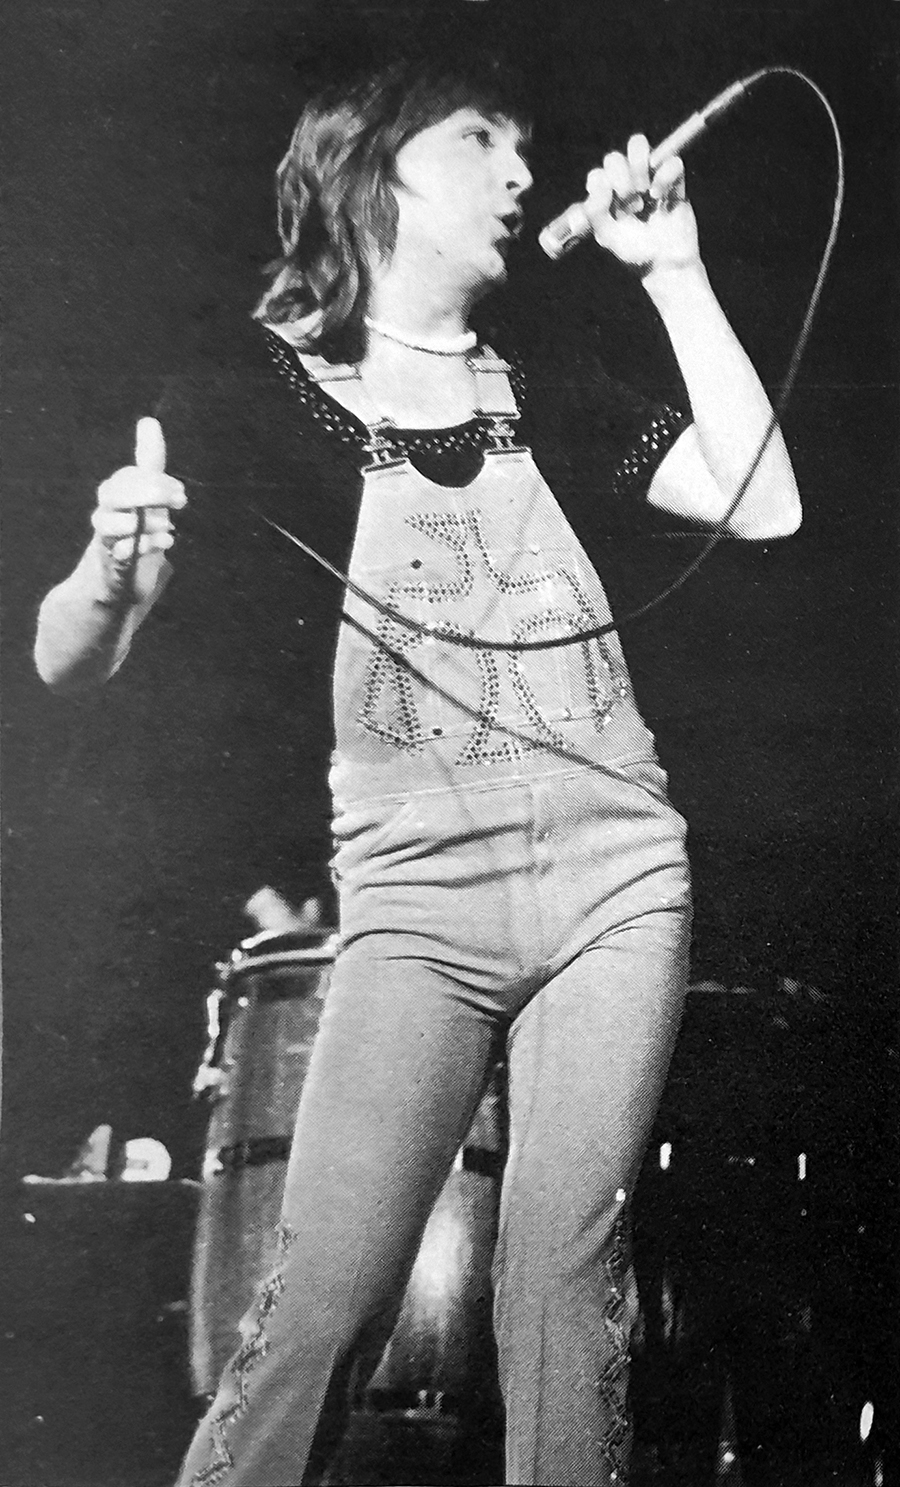 David Cassidy - May 9, 1974